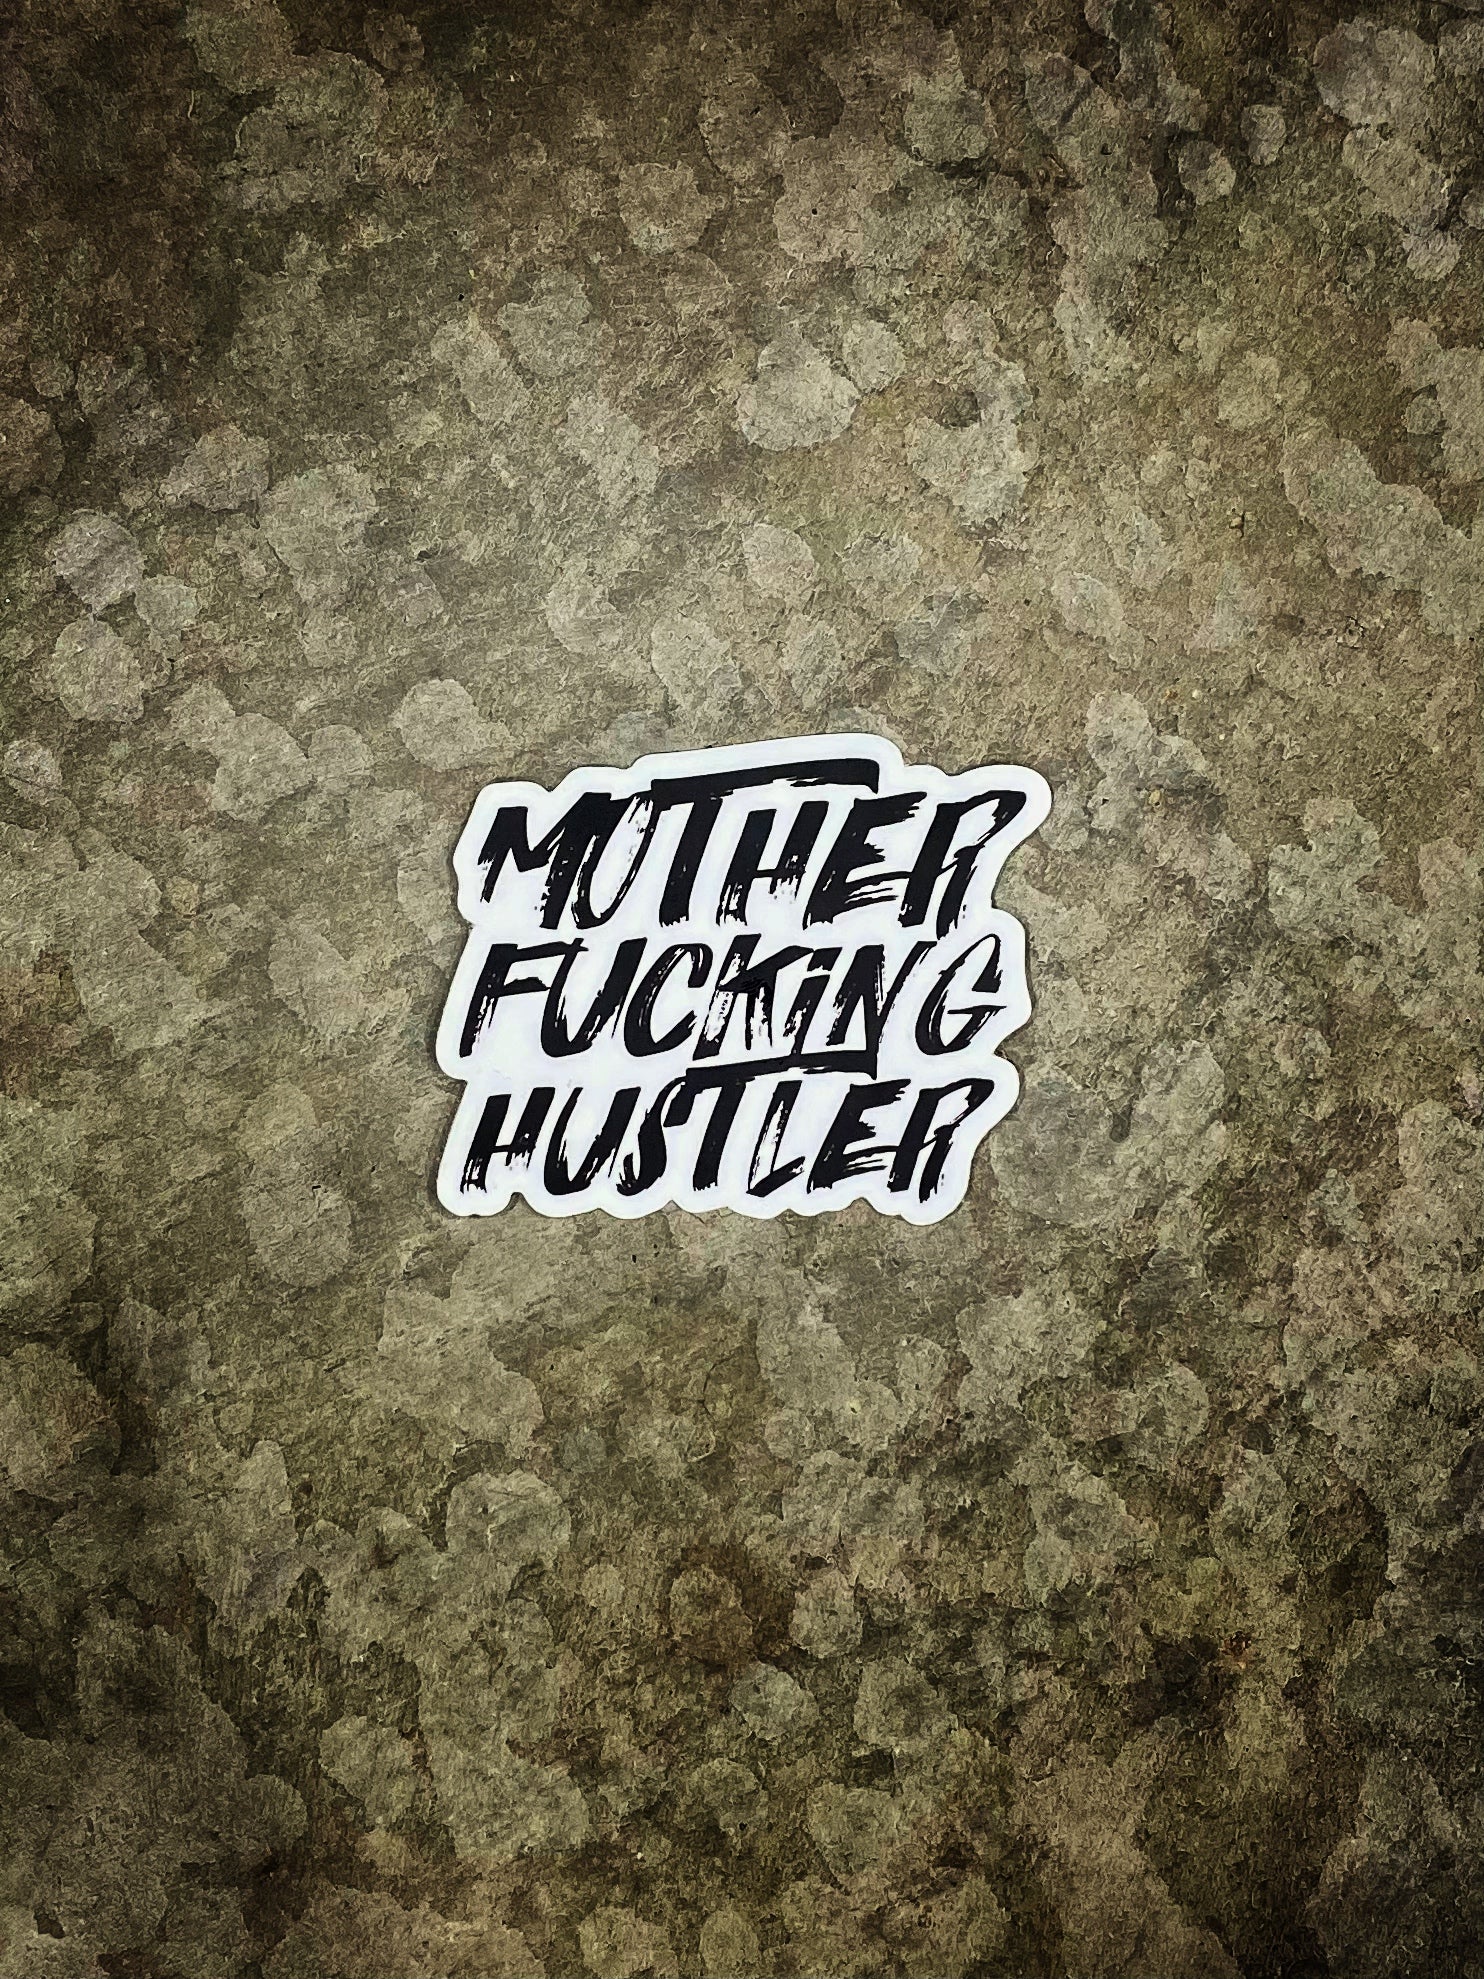 MF HUSTLER STICKER - Dude That Lifts